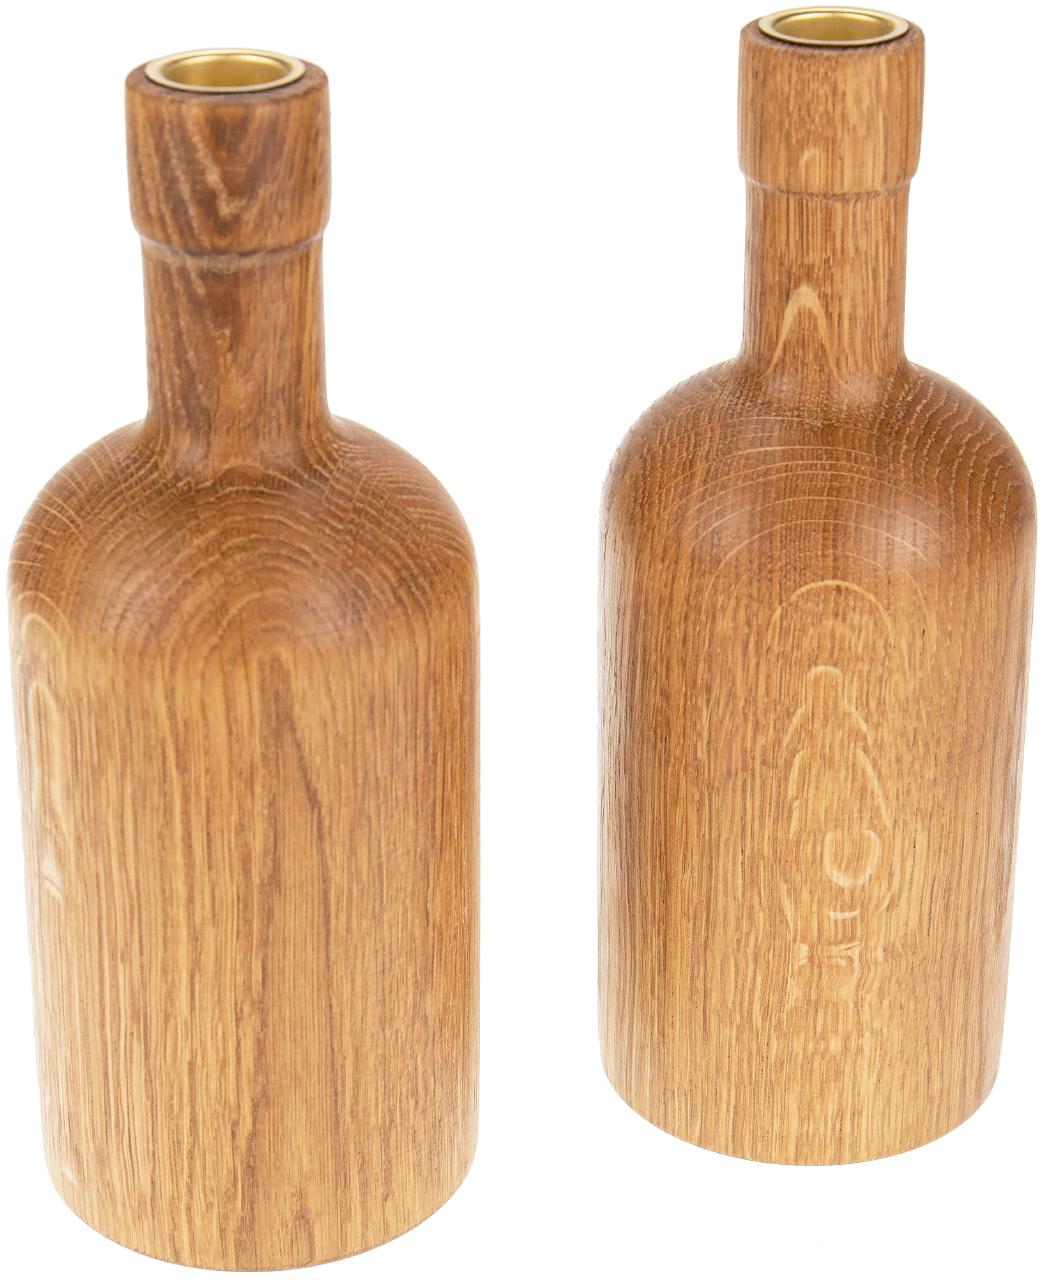 Gedrechselter Kerzenstaender in Flaschenform aus geoeltem Eichenholz